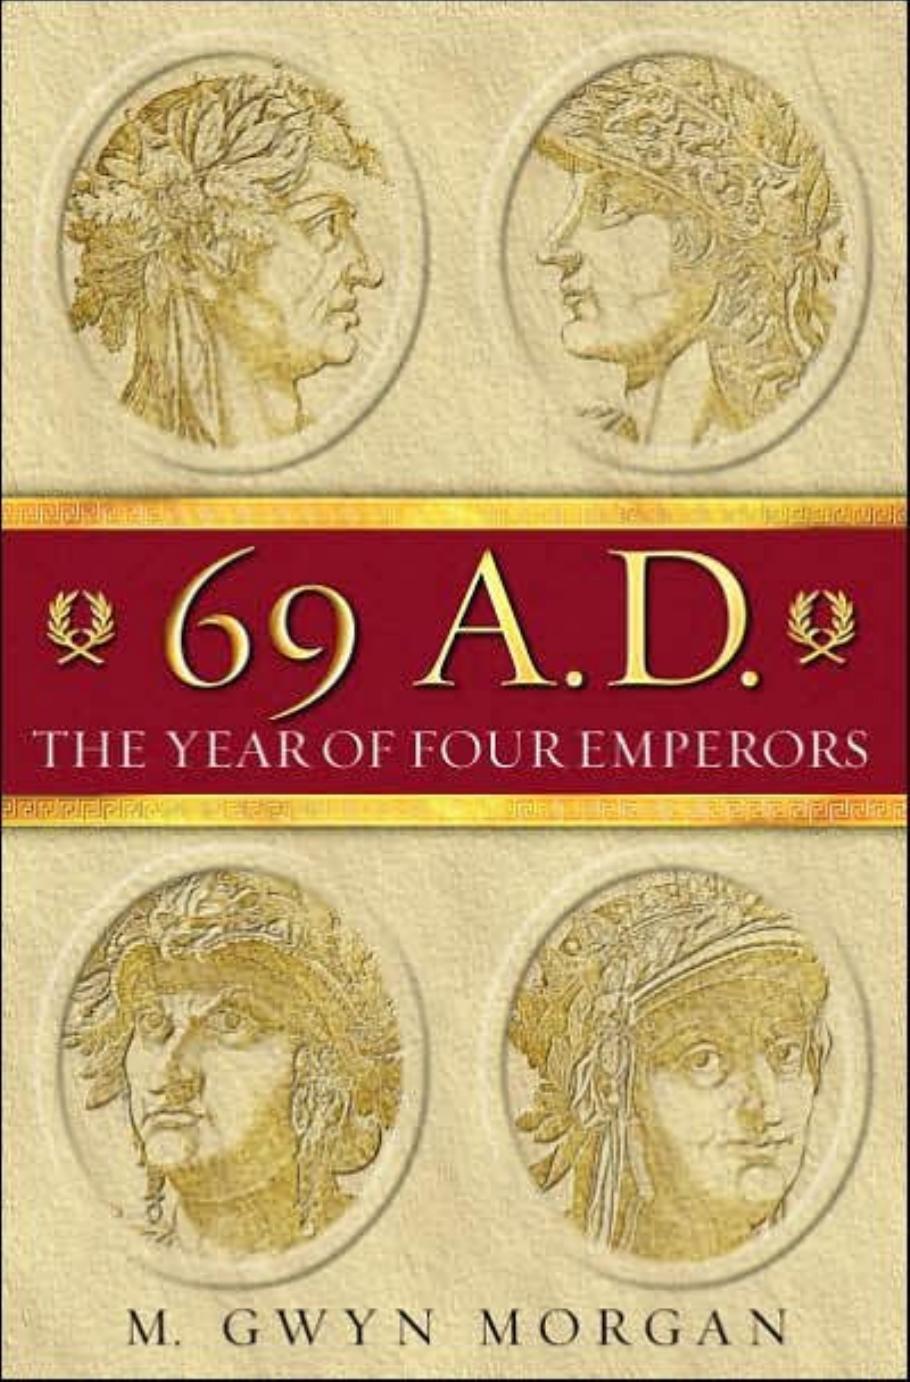 69 A.D.